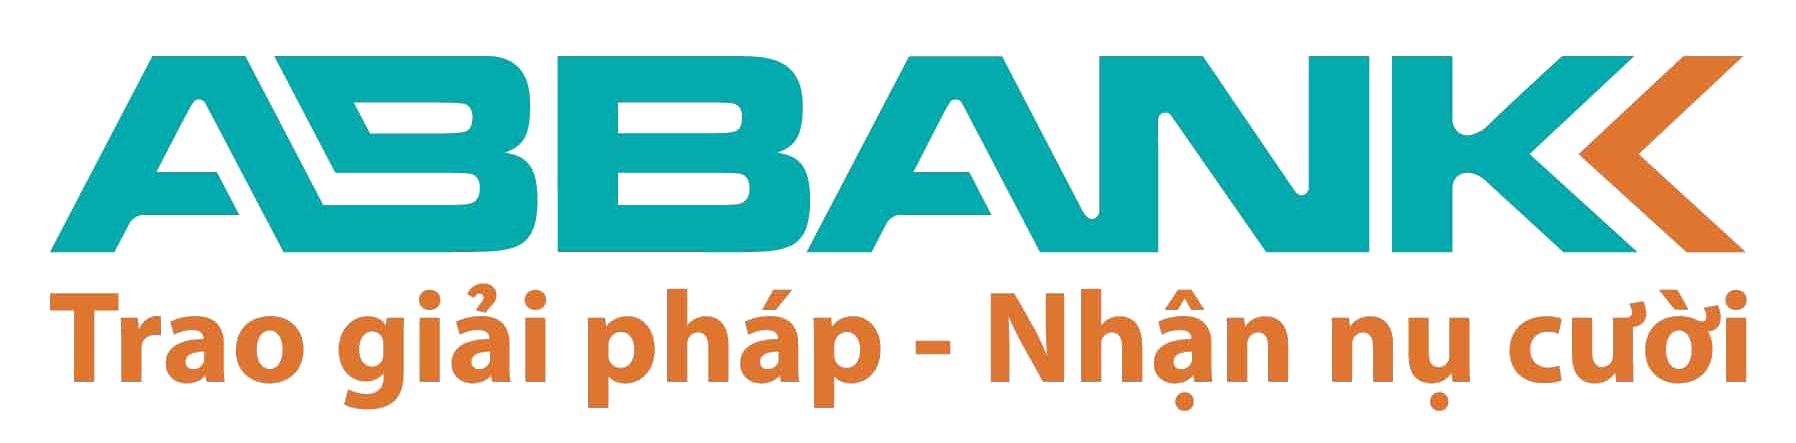 Vay bổ sung vốn sản xuất kinh doanh dịch vụ ABBank